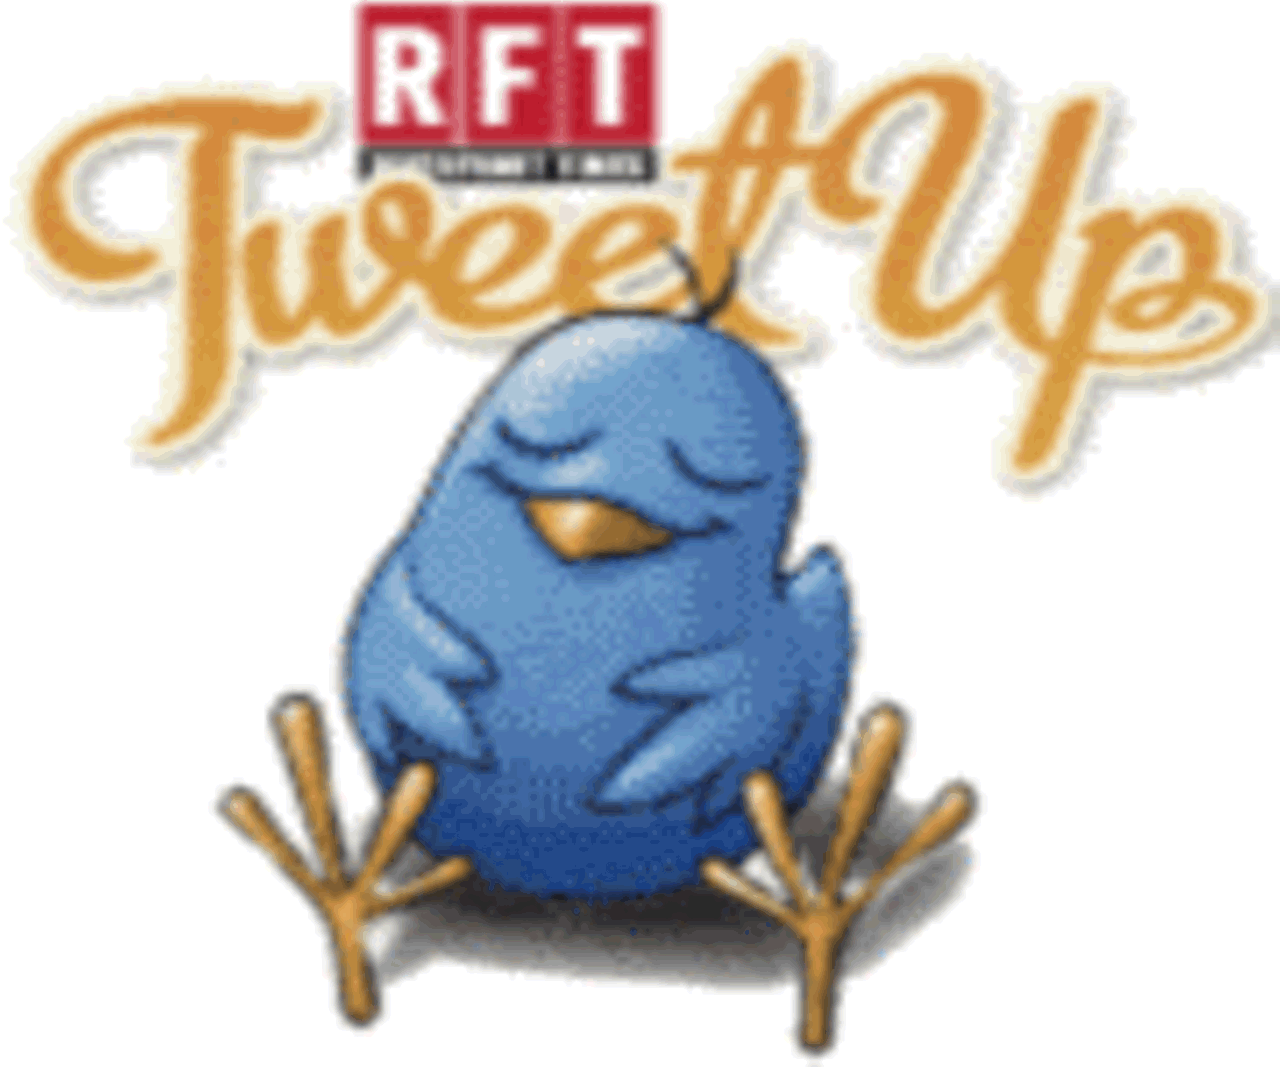 RFT Tweet Up